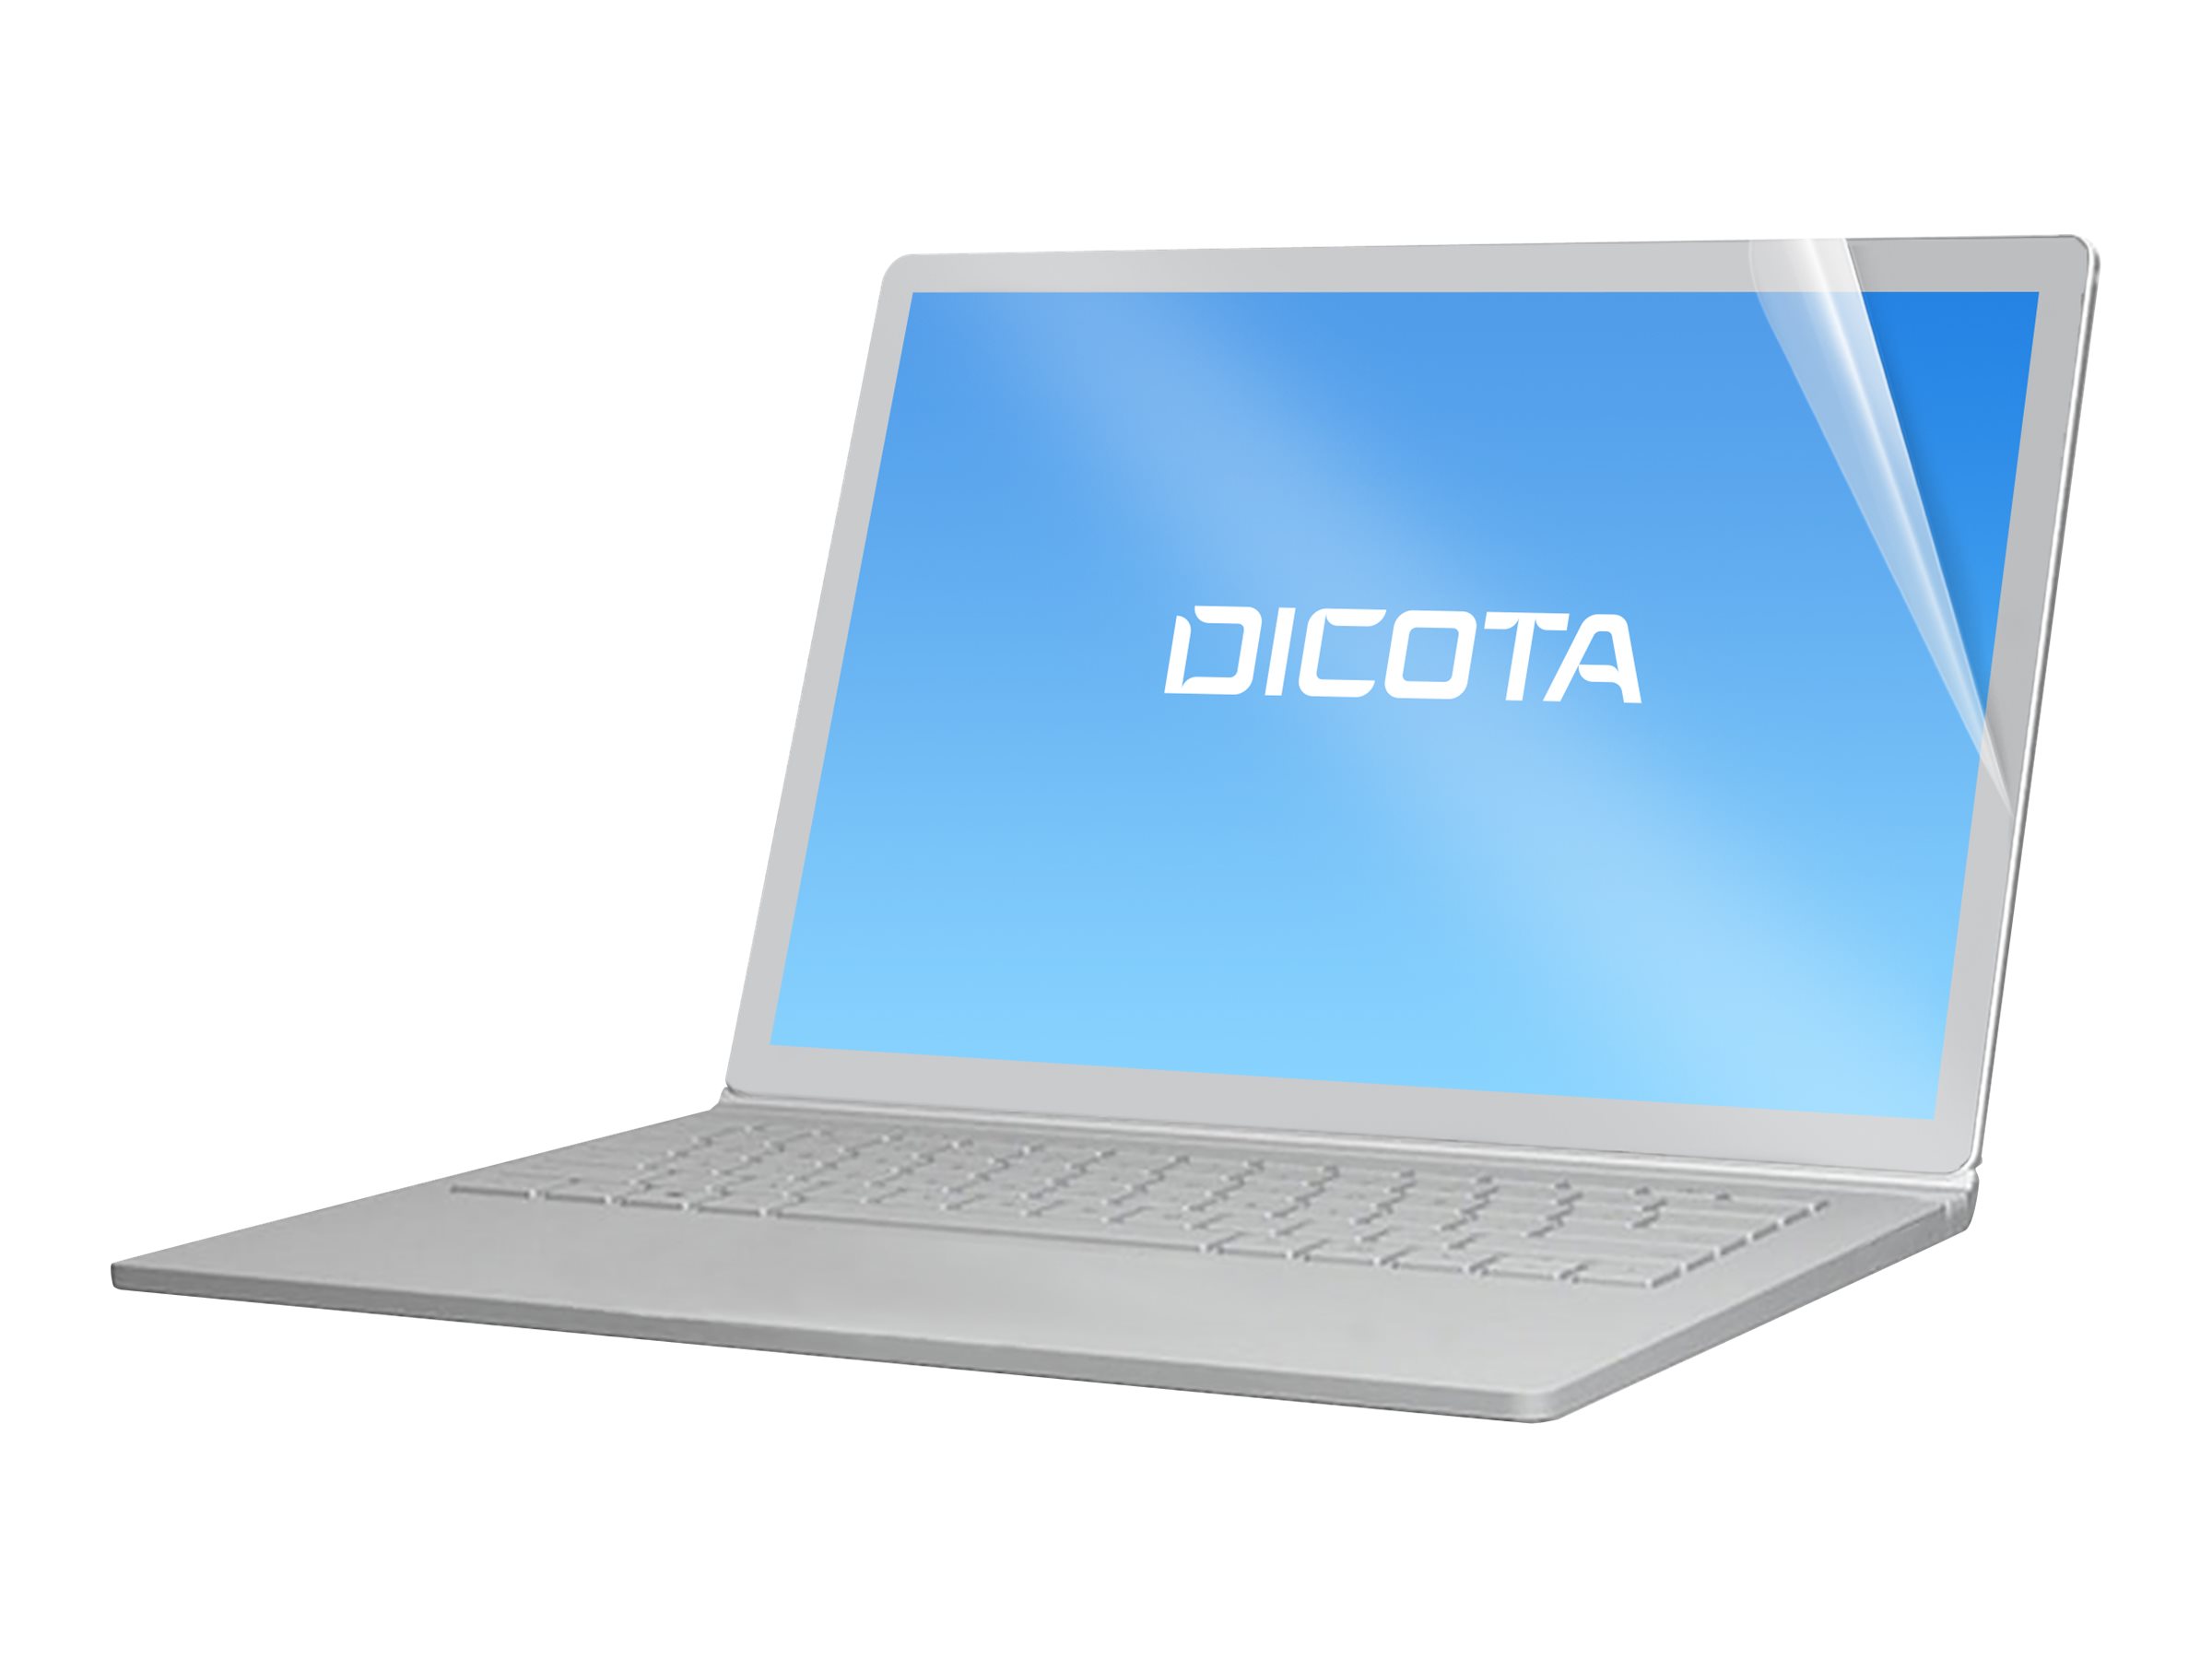 Vorschau: Dicota Blickschutzfilter für Notebook - anti-glare 3H